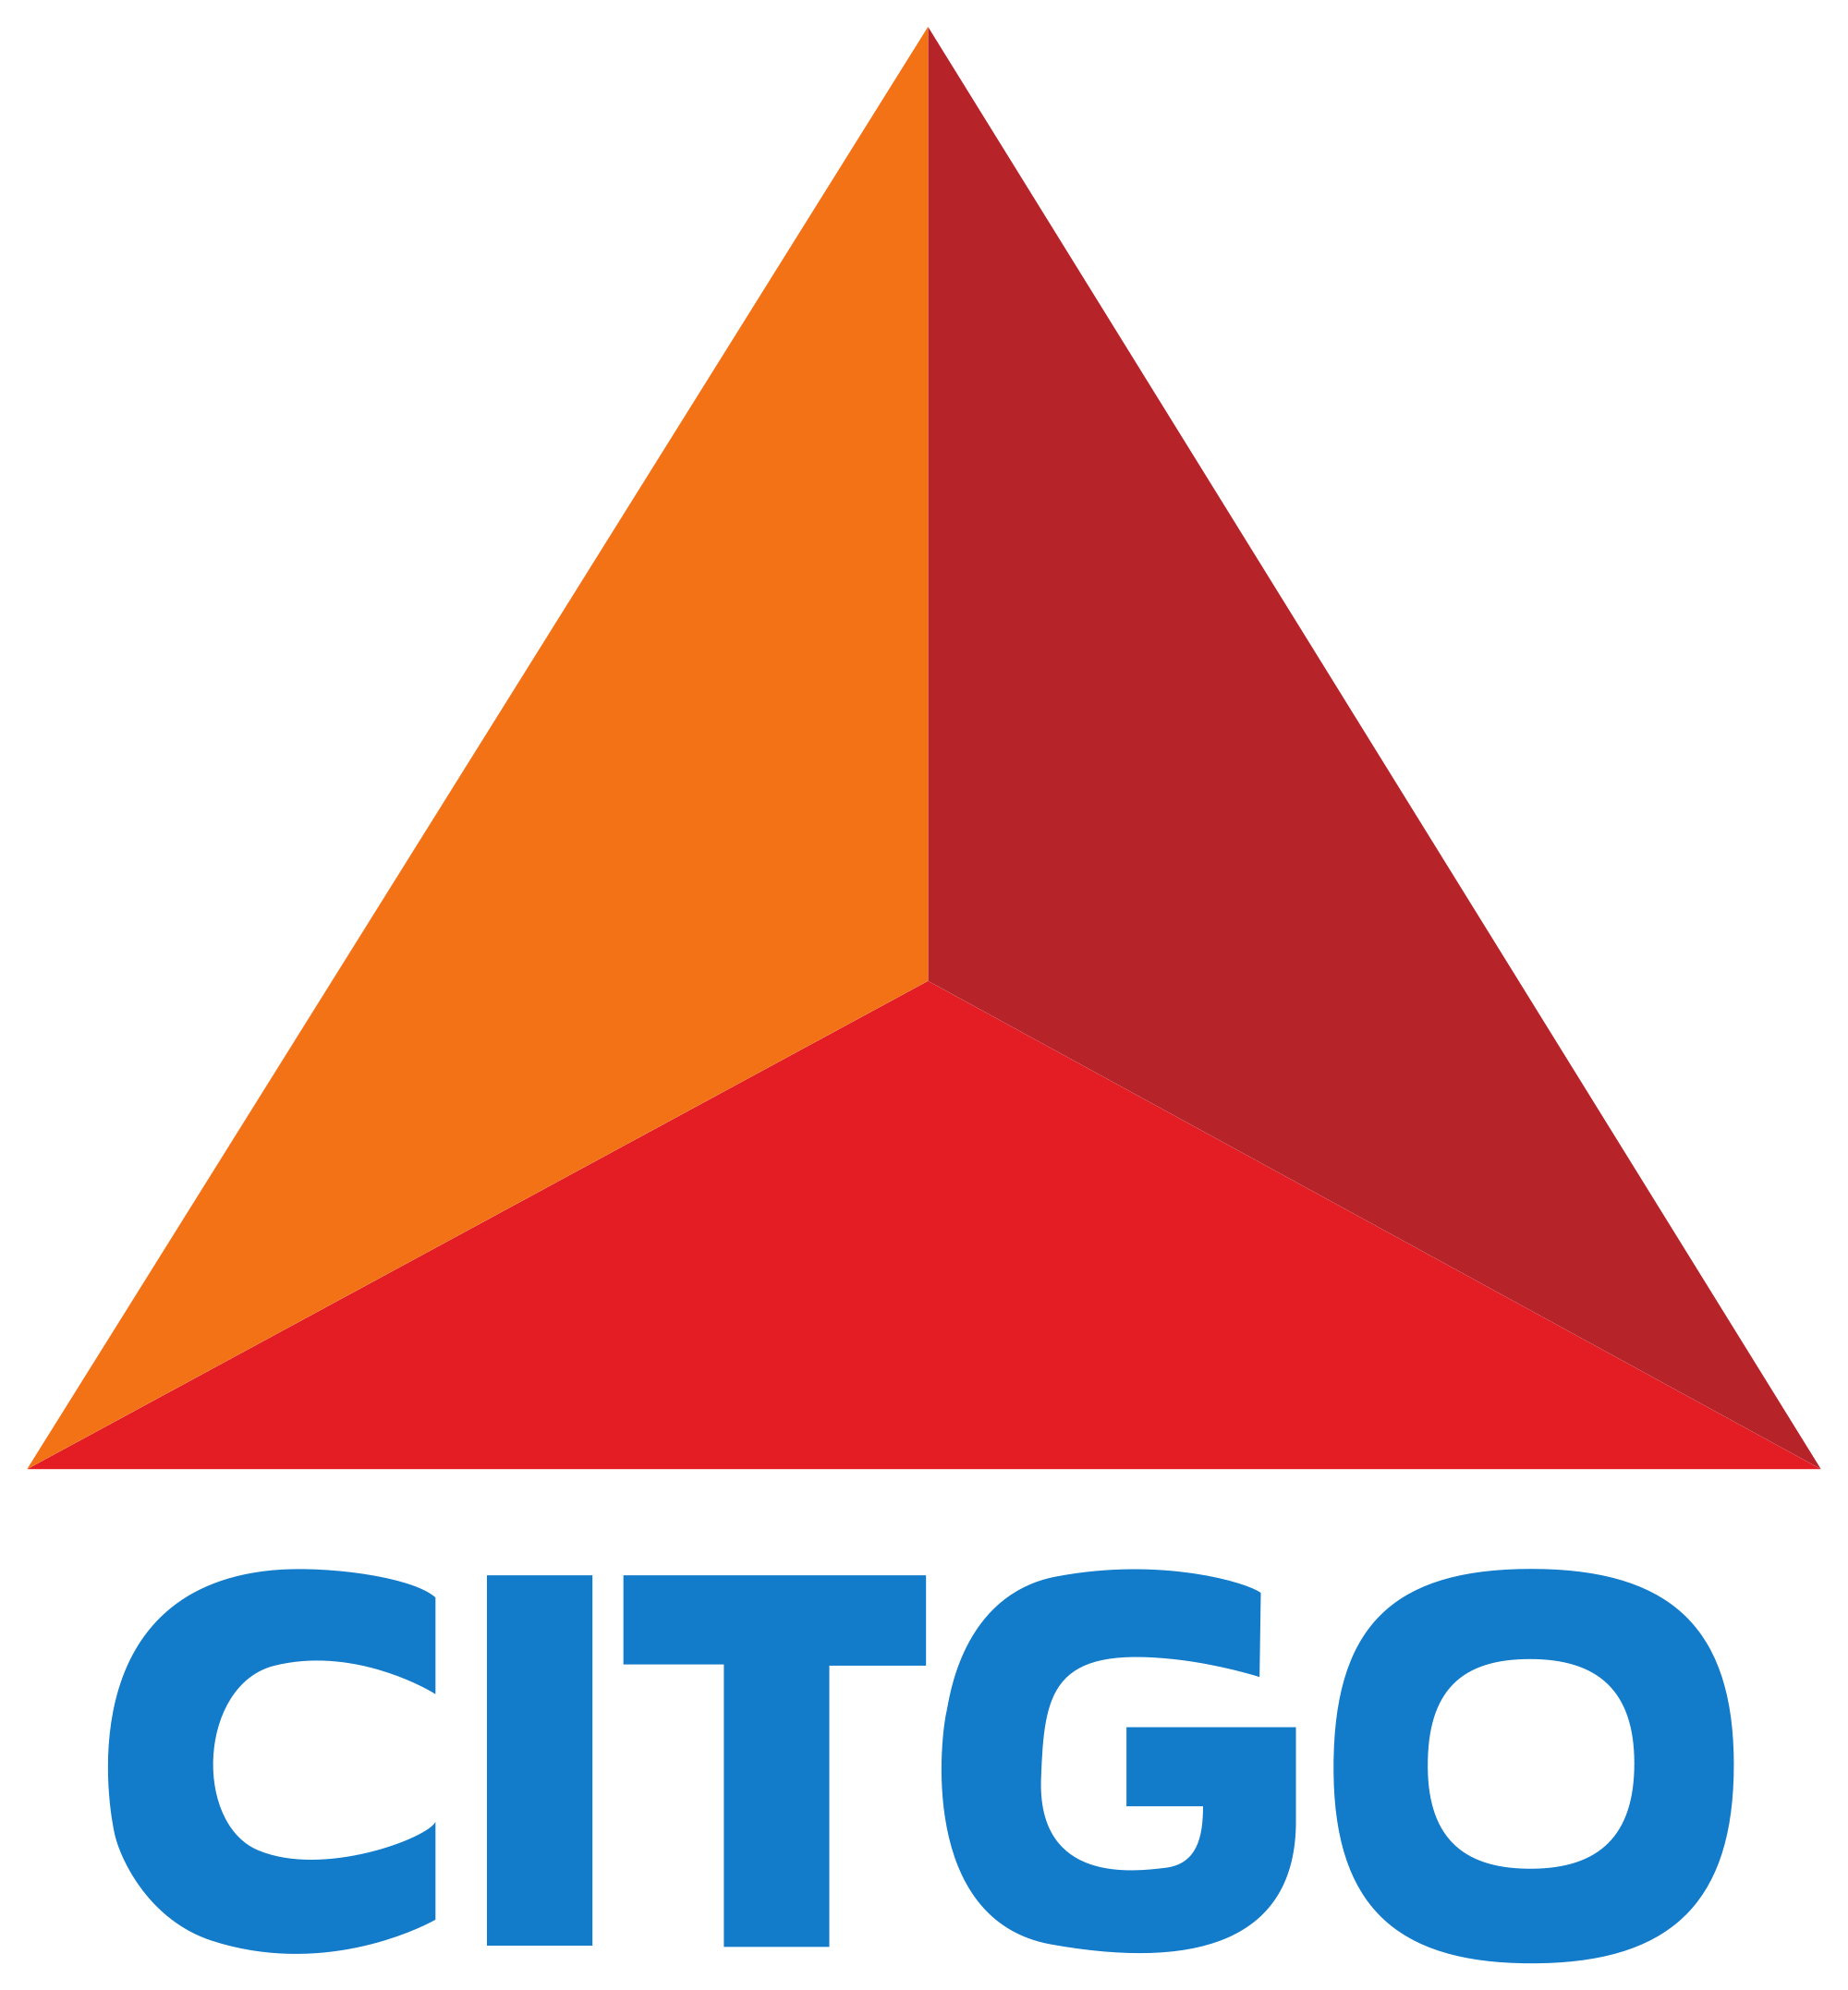 Citgo Logo - File:Citgo logo.svg - Wikimedia Commons